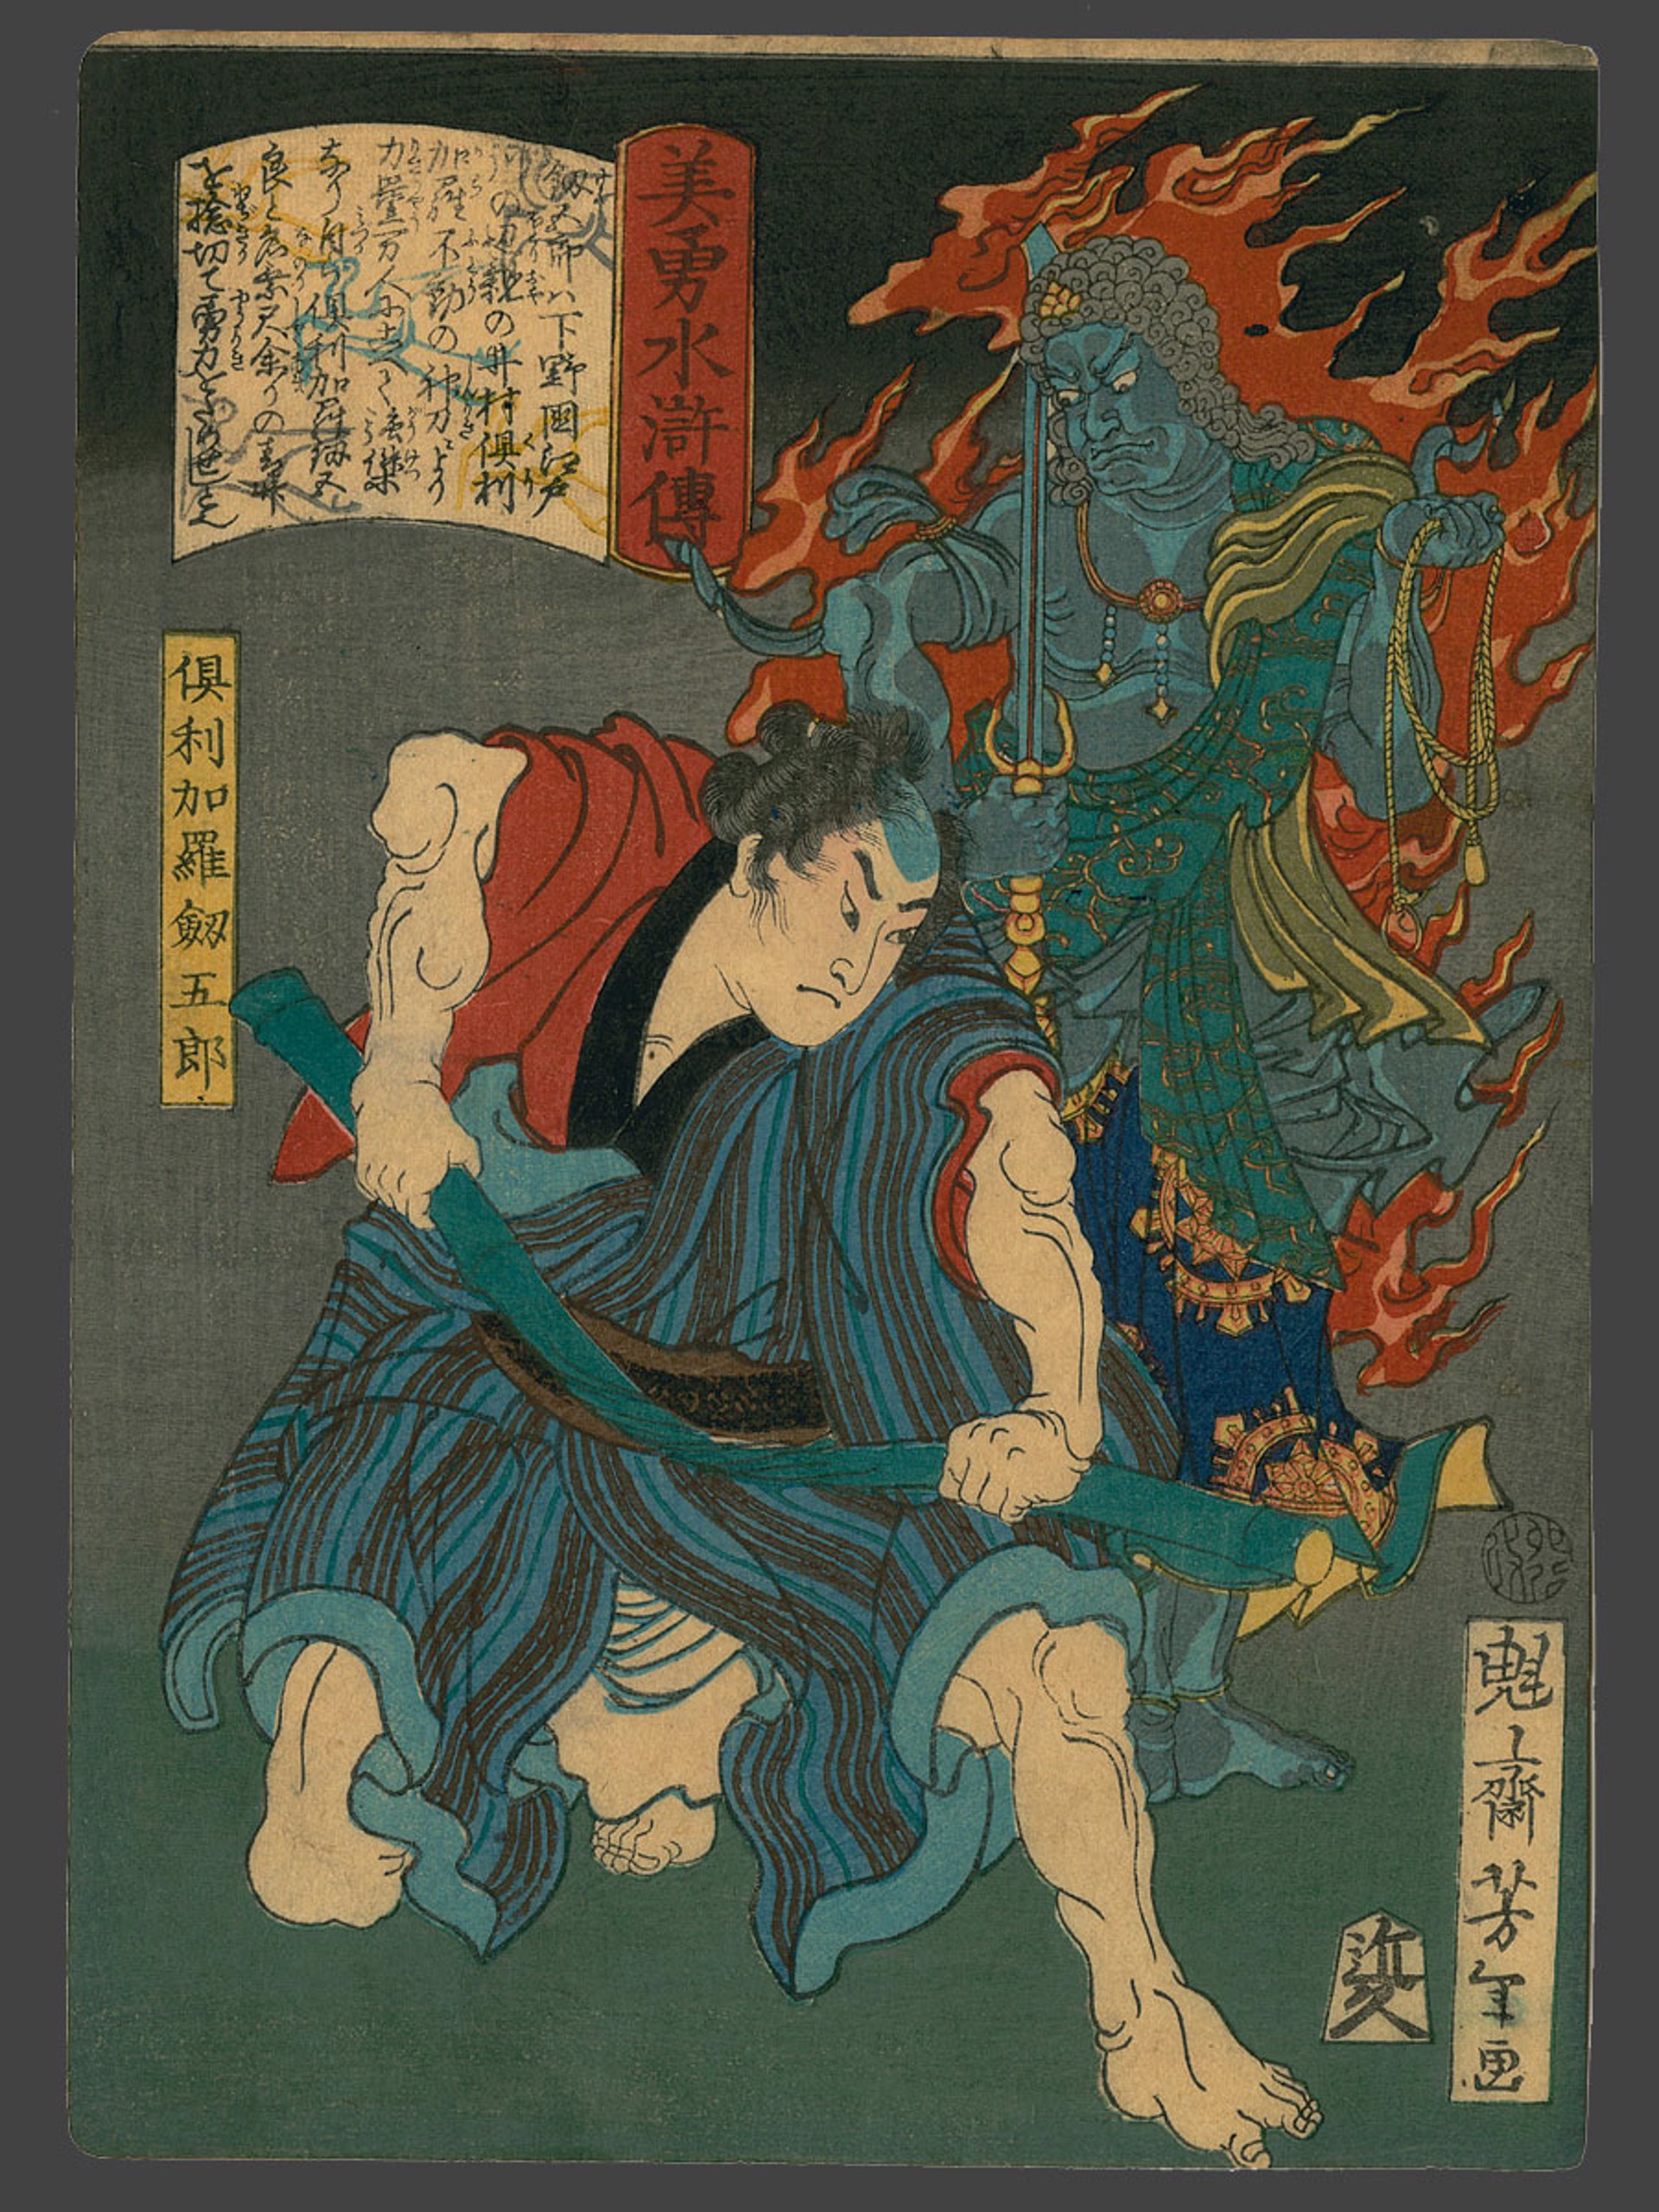 #44, Kurikara Kenguro and Fudo-o Biyu Suikoden (Beauty and Valor in Tales of the Water Margin) by Yoshitoshi